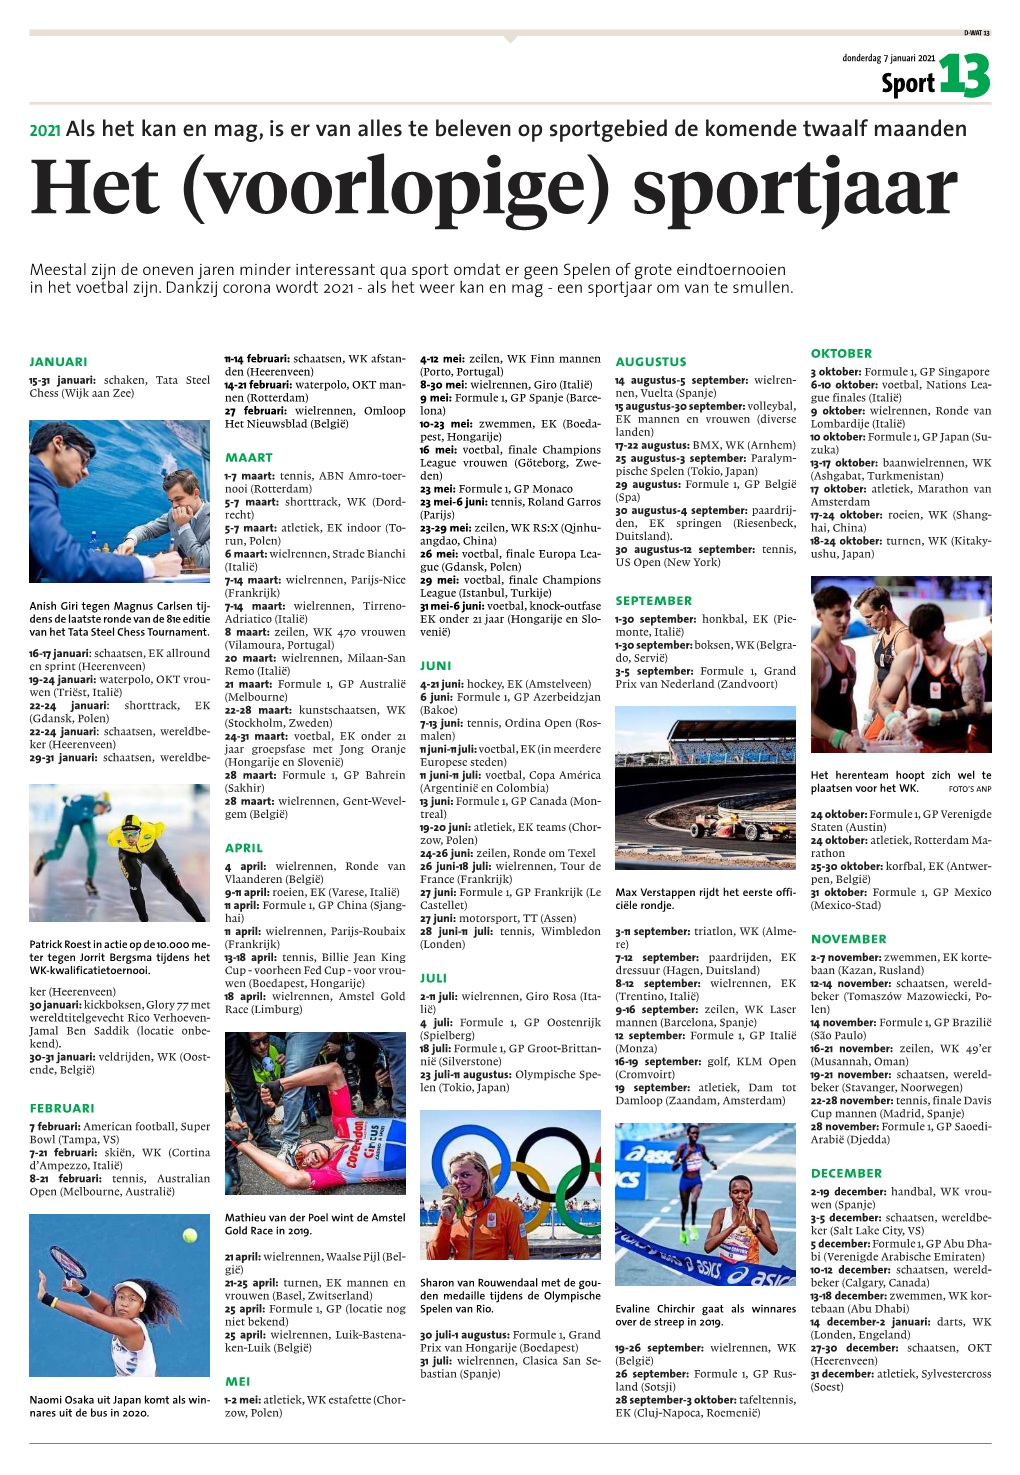 Kalender Van Het ( Voorlopige) Sportjaar 2021